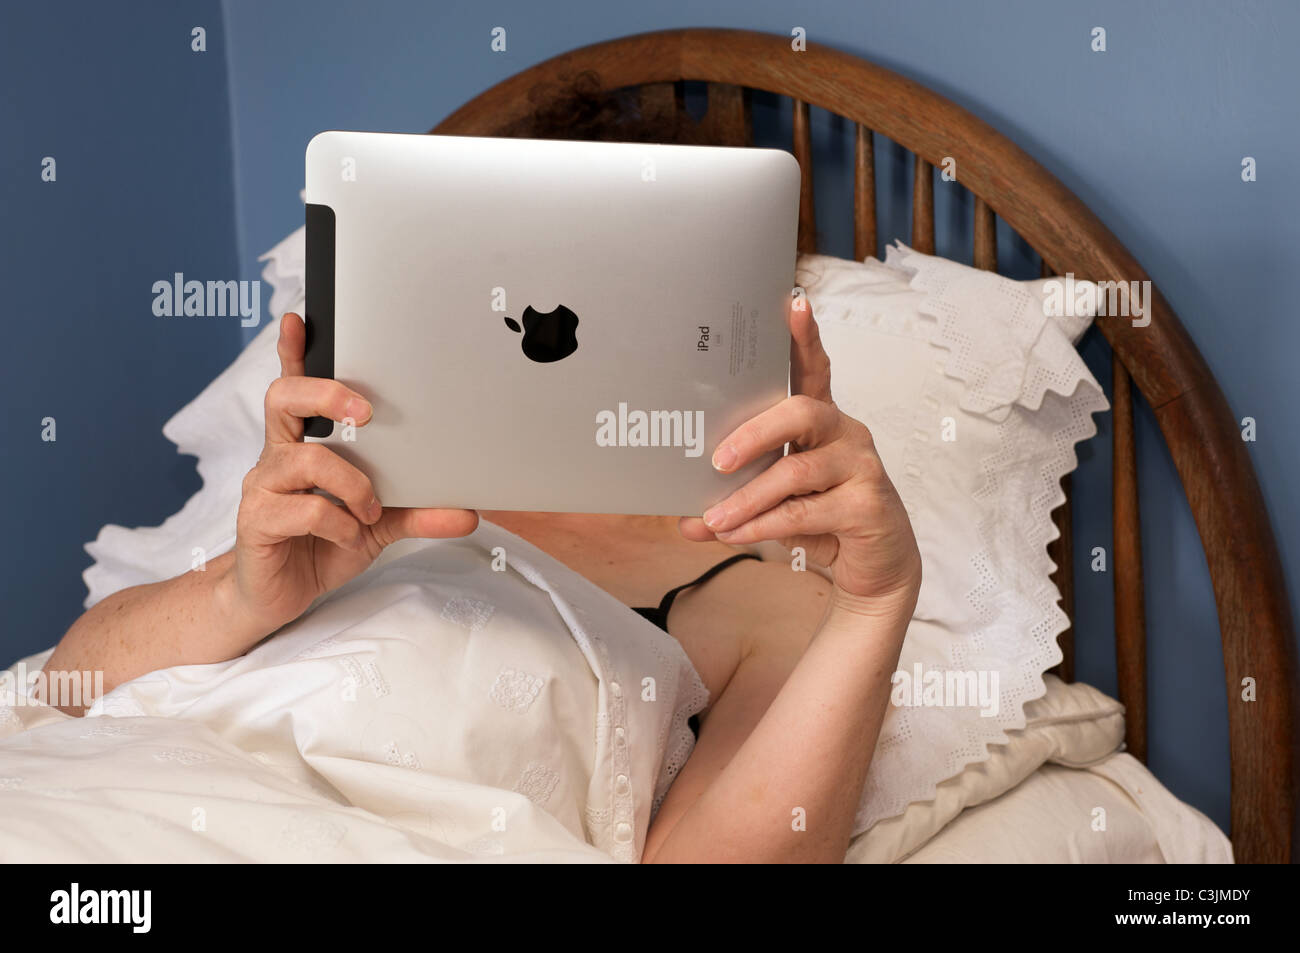 Frau liest ein Buch über ein Apple iPad Tablet-computer Stockfoto